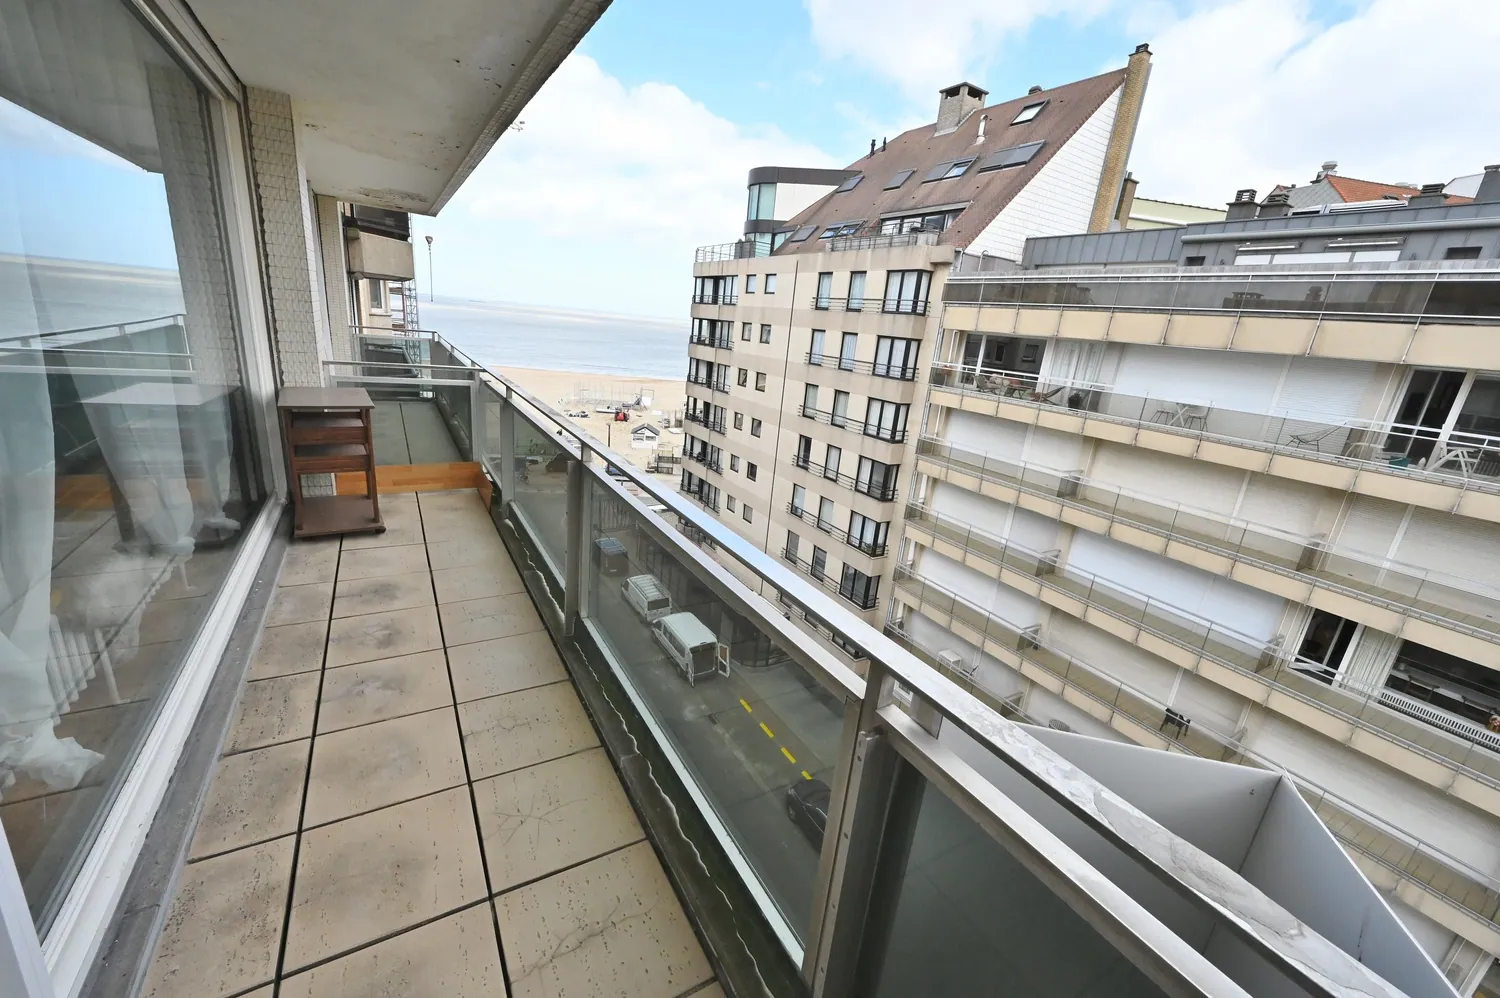 Eénslaapkamer appartement met terras genietend van een zijdelings zeezicht nabij het Rubensplein.